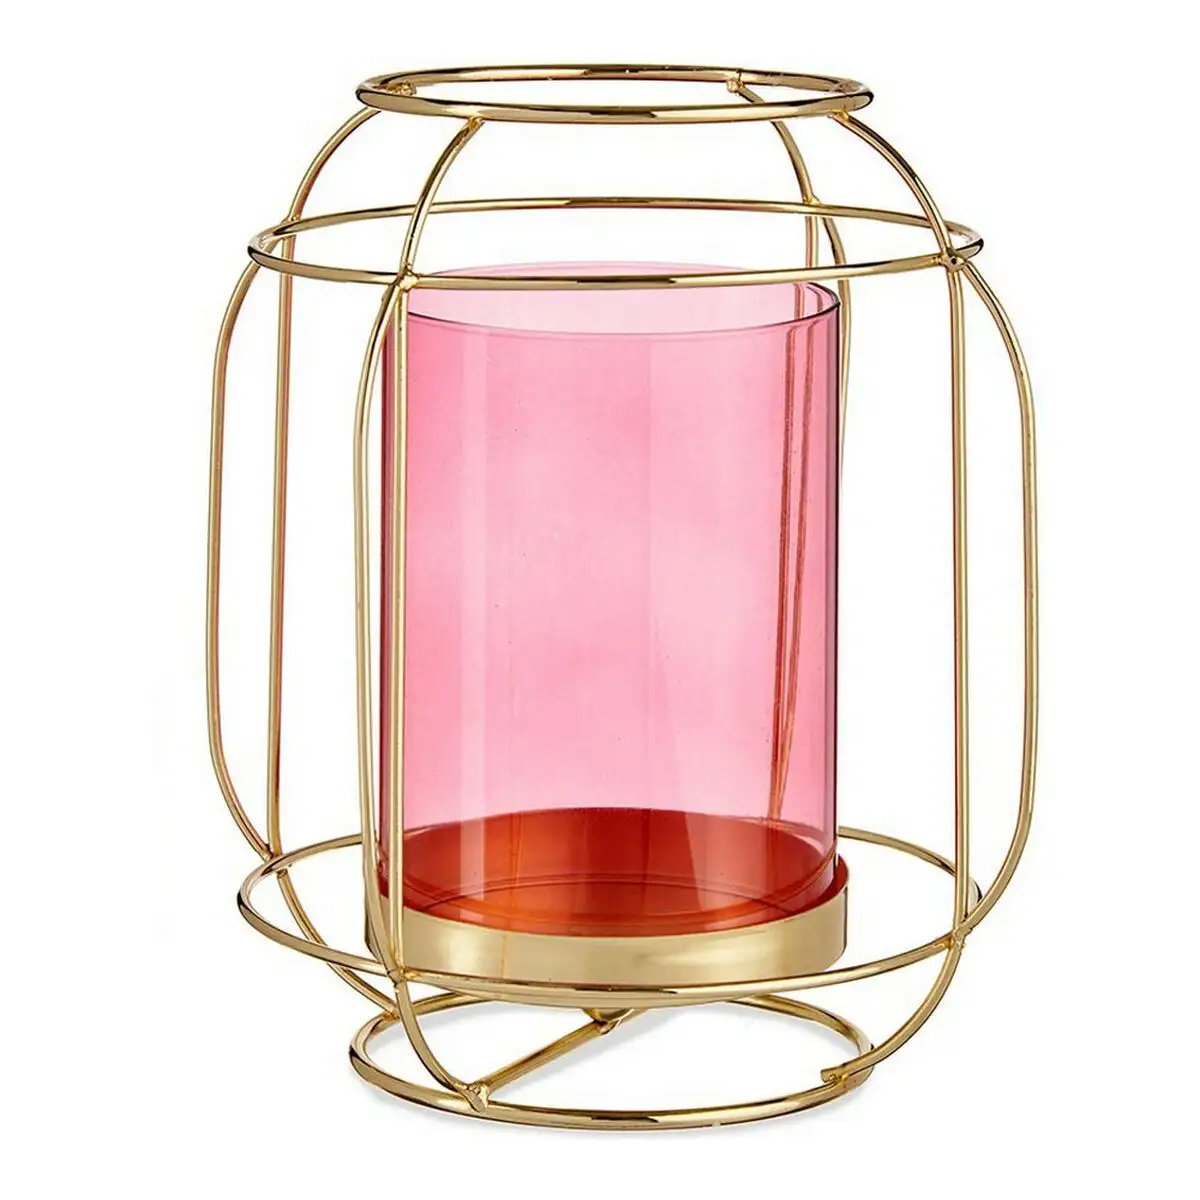 Bougeoir rose dore lanterne metal verre 19 x 20 x 19 cm _7945. DIAYTAR SENEGAL - L'Art de Choisir, l'Art de Vivre. Parcourez notre boutique en ligne et découvrez des produits qui transforment chaque choix en une expérience enrichissante.